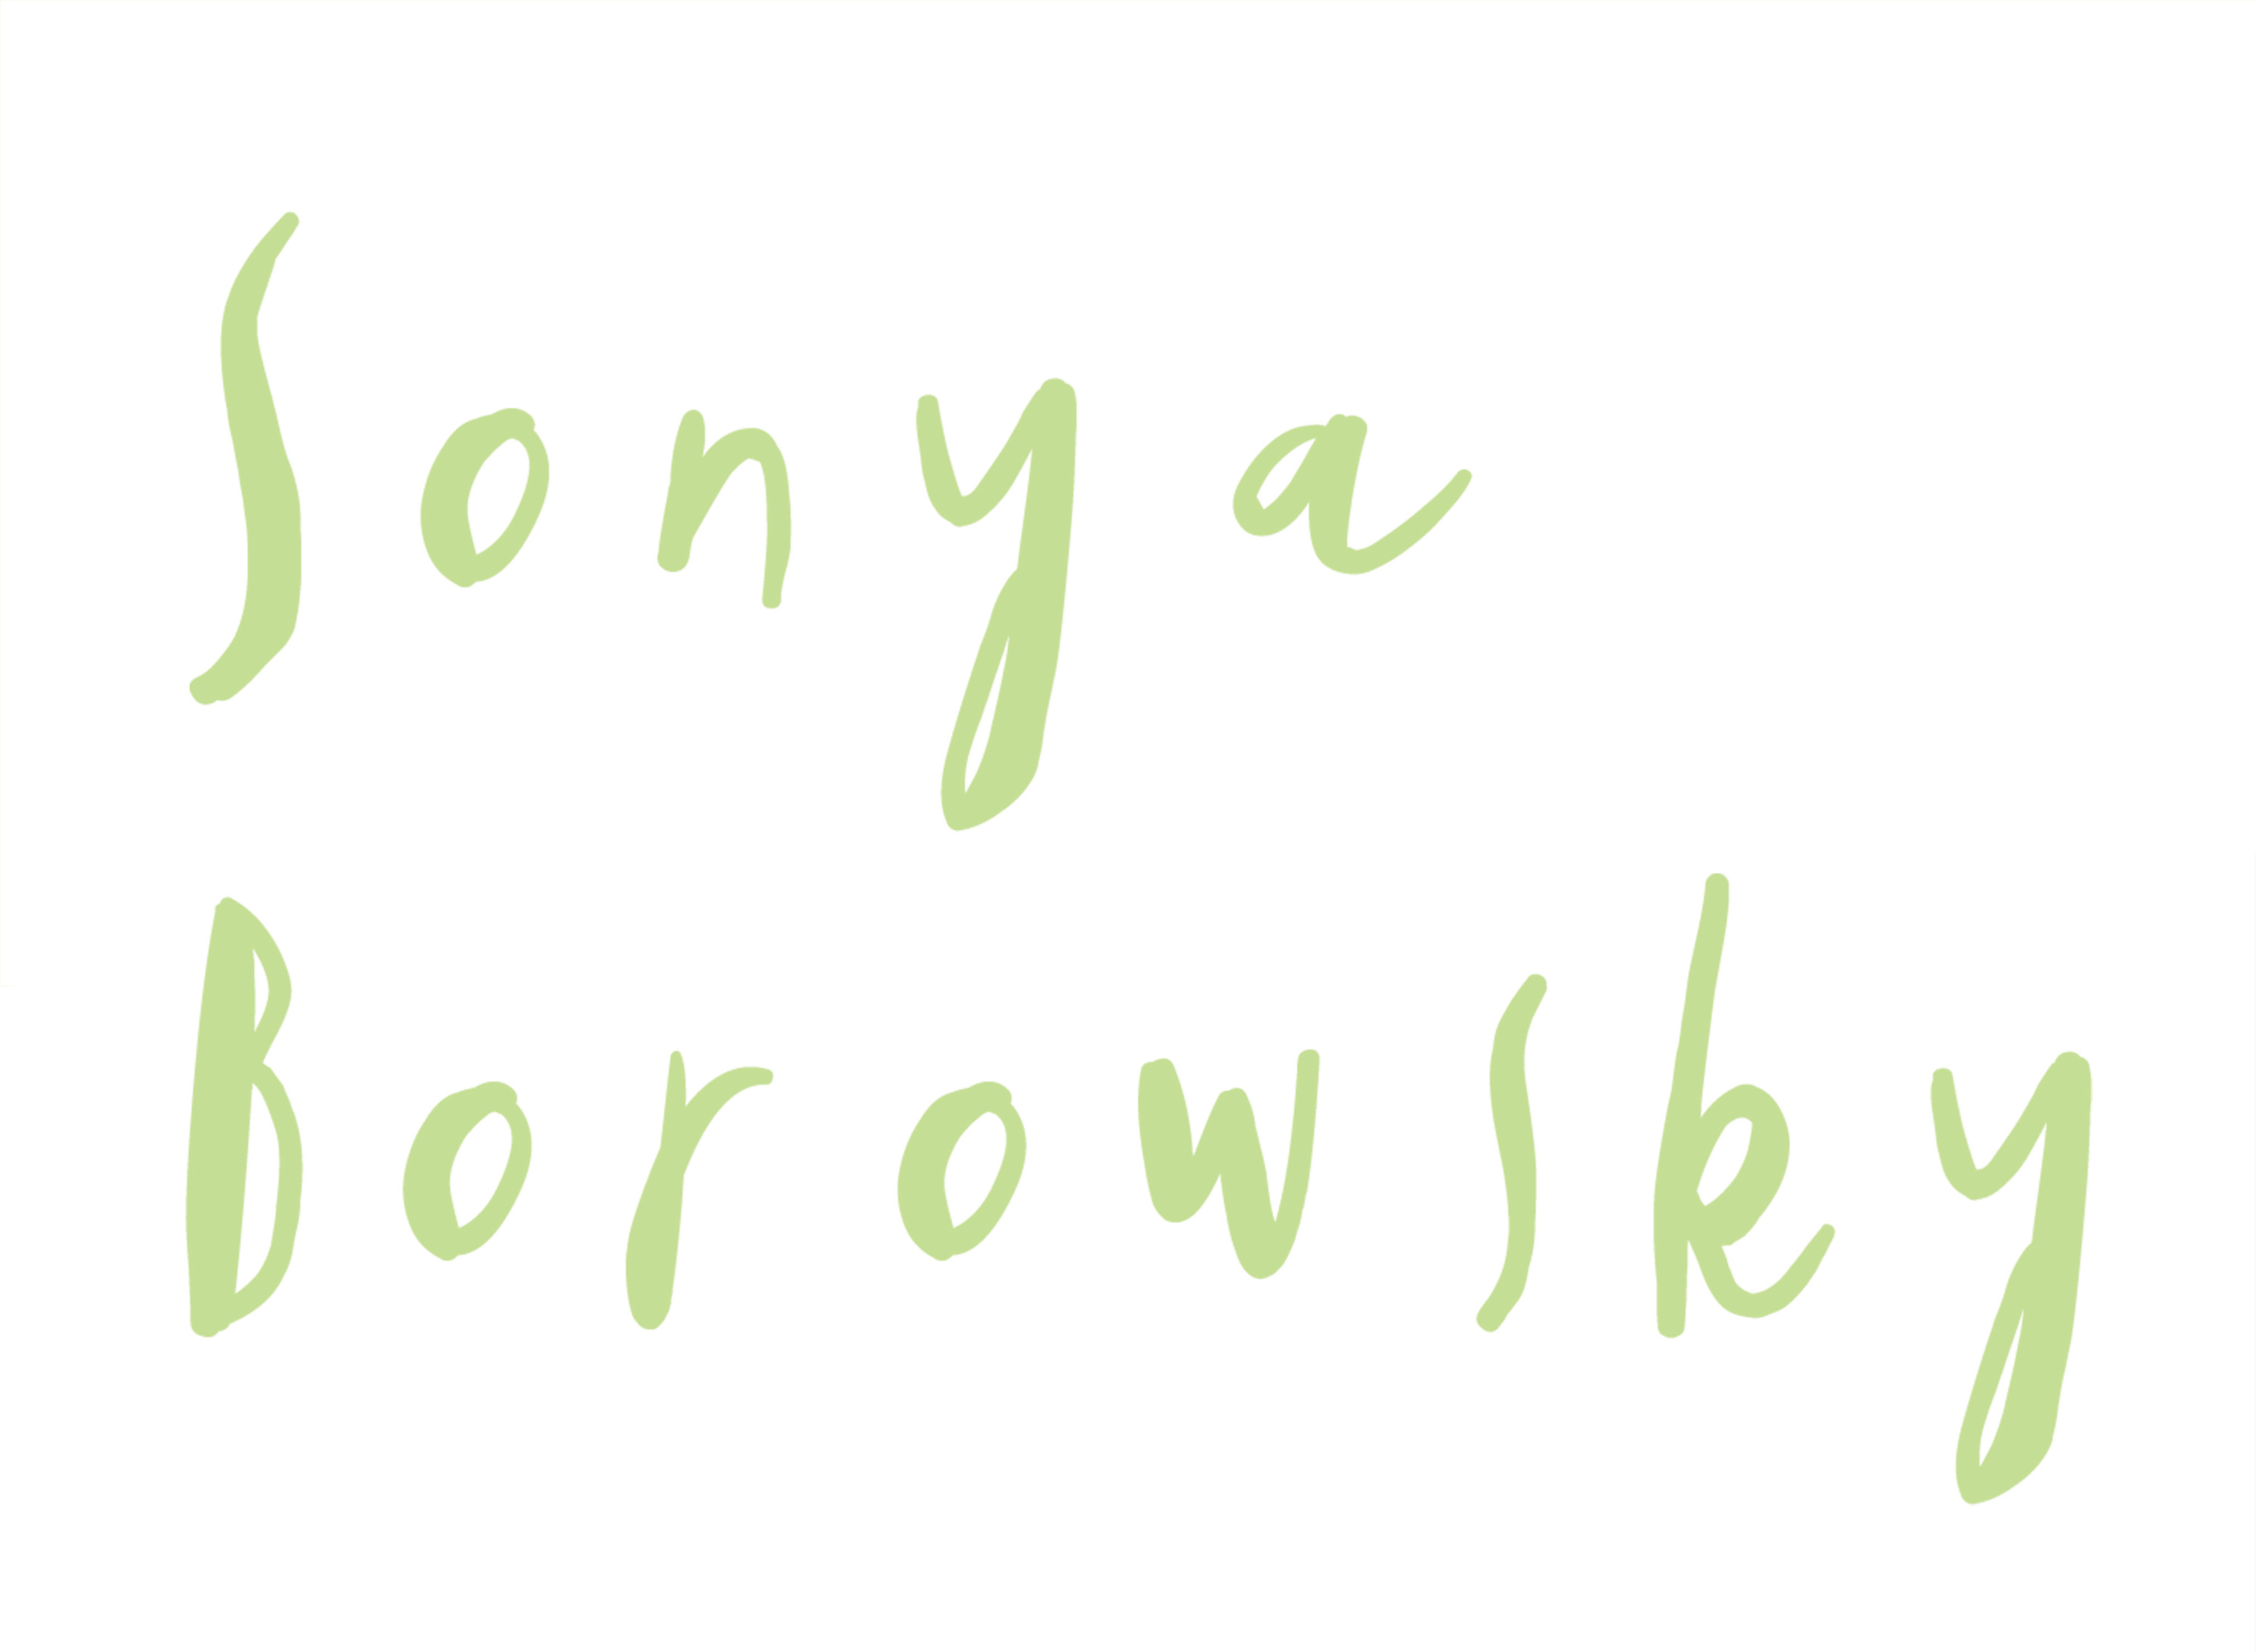 Sonya Borowsky's Portfolio